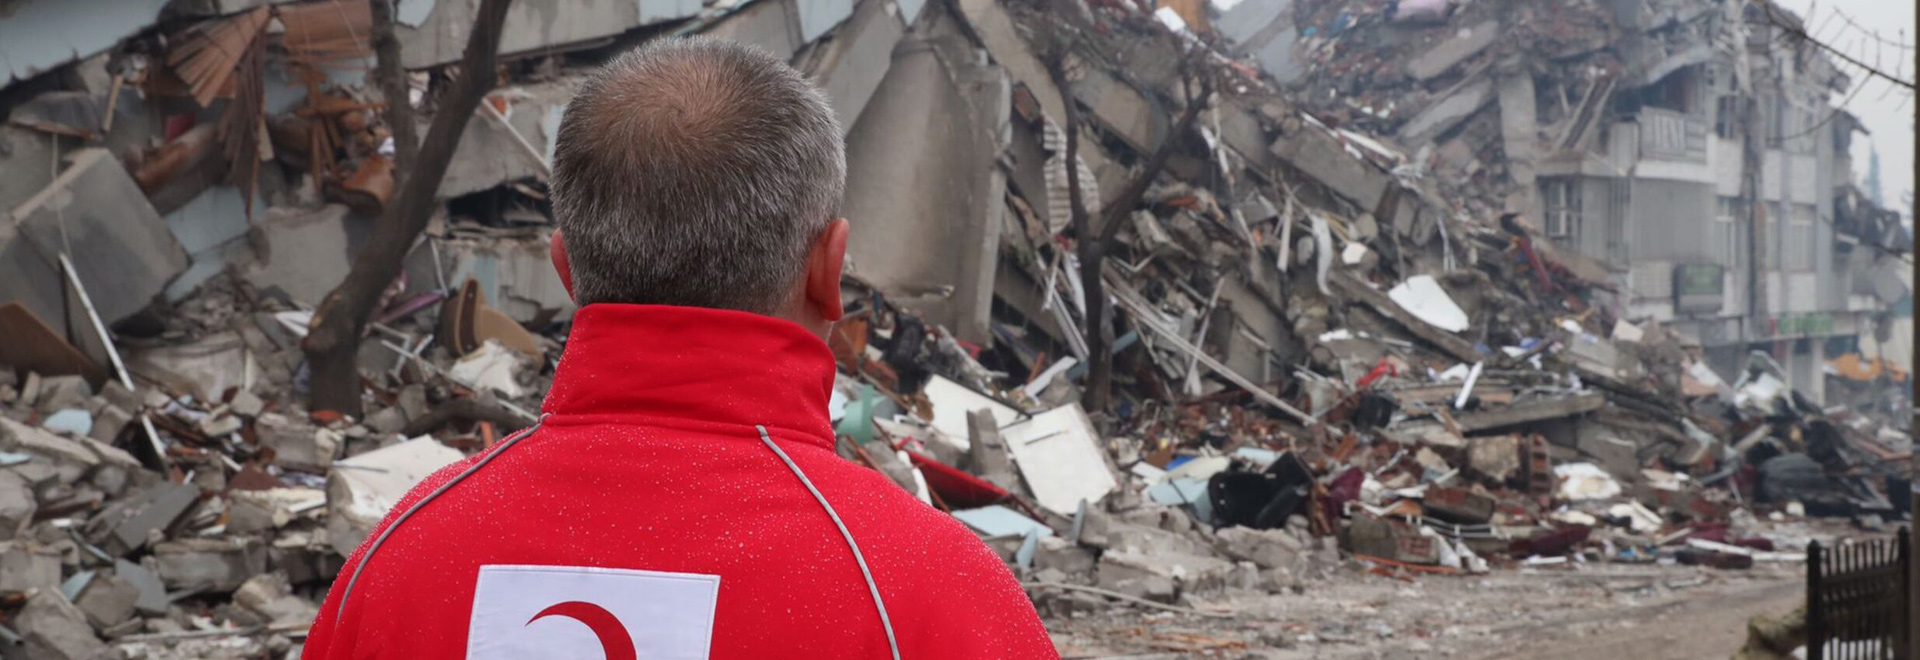 Hilfskräfte suchen nach Verletzten in den Trümmern nach dem Erdbeben